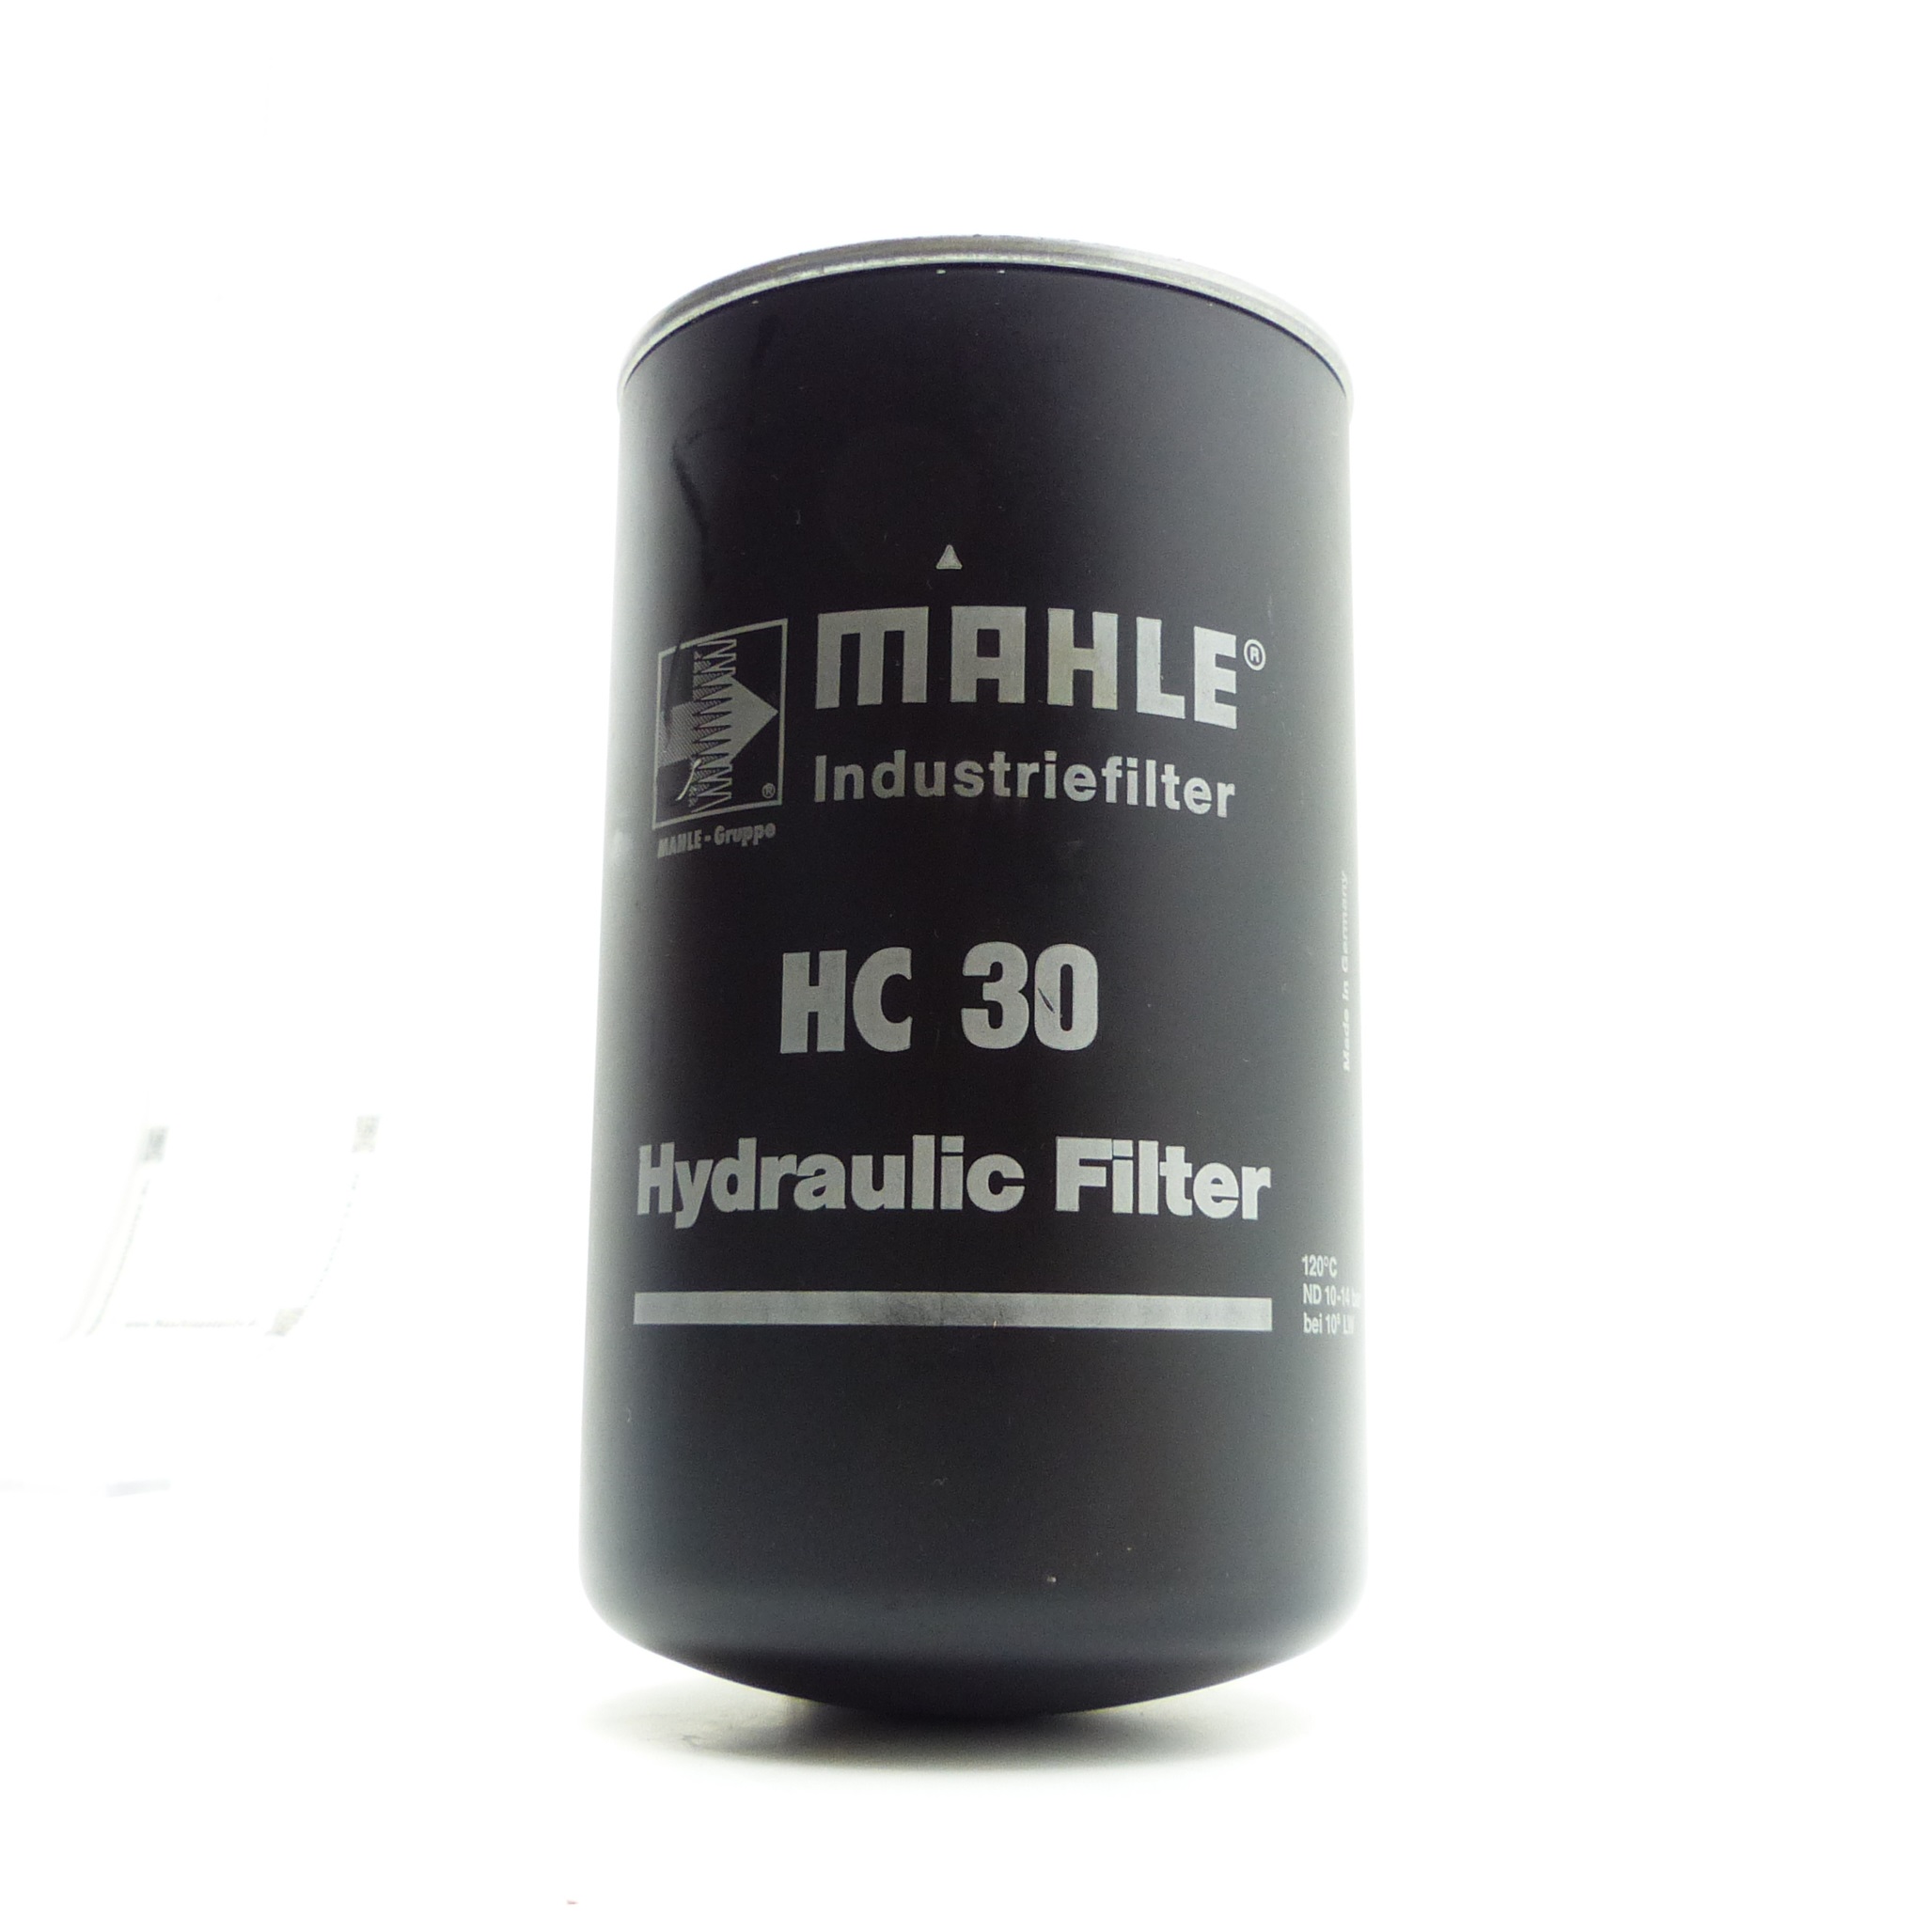 Industriefilter HC 30 